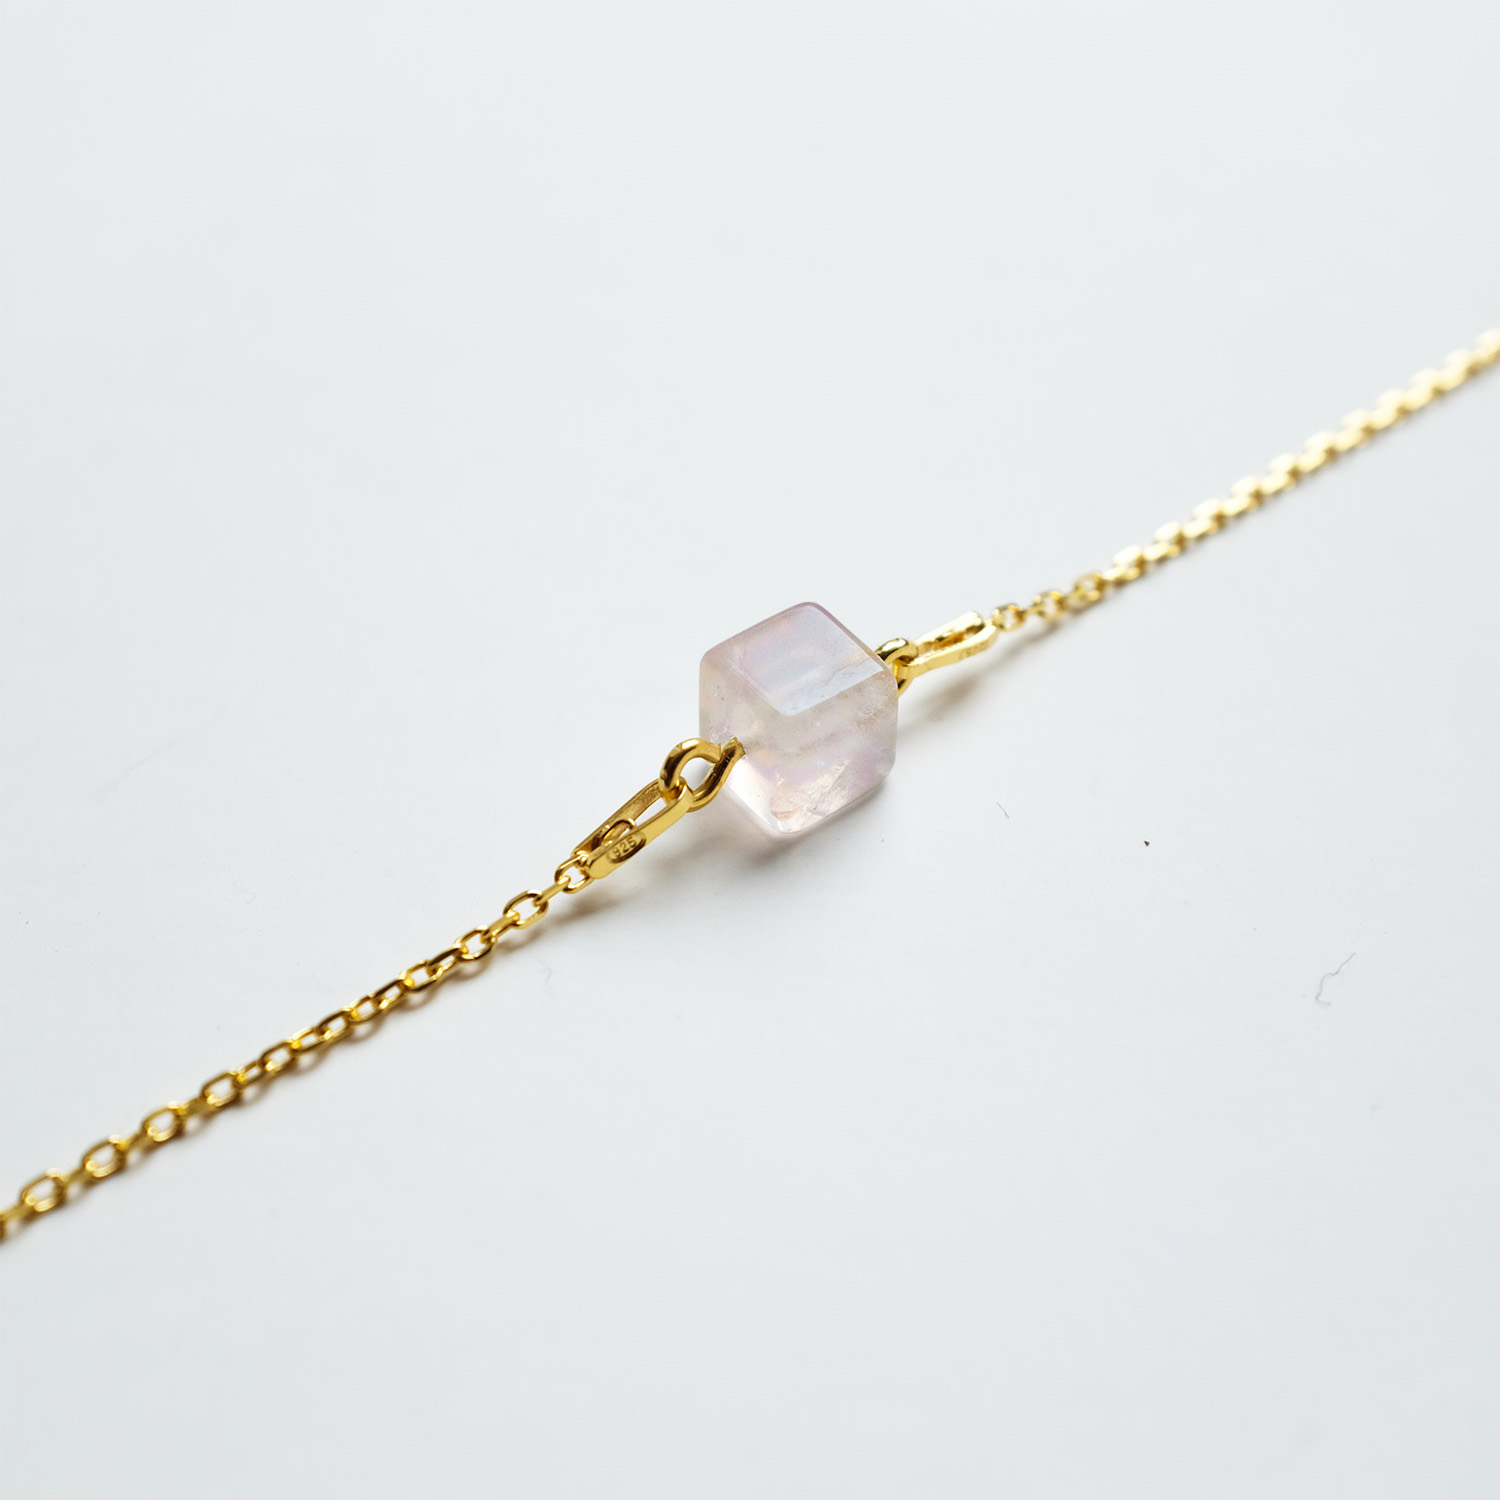 metaformi_design_jewelry_cube_necklace_rose_quartz